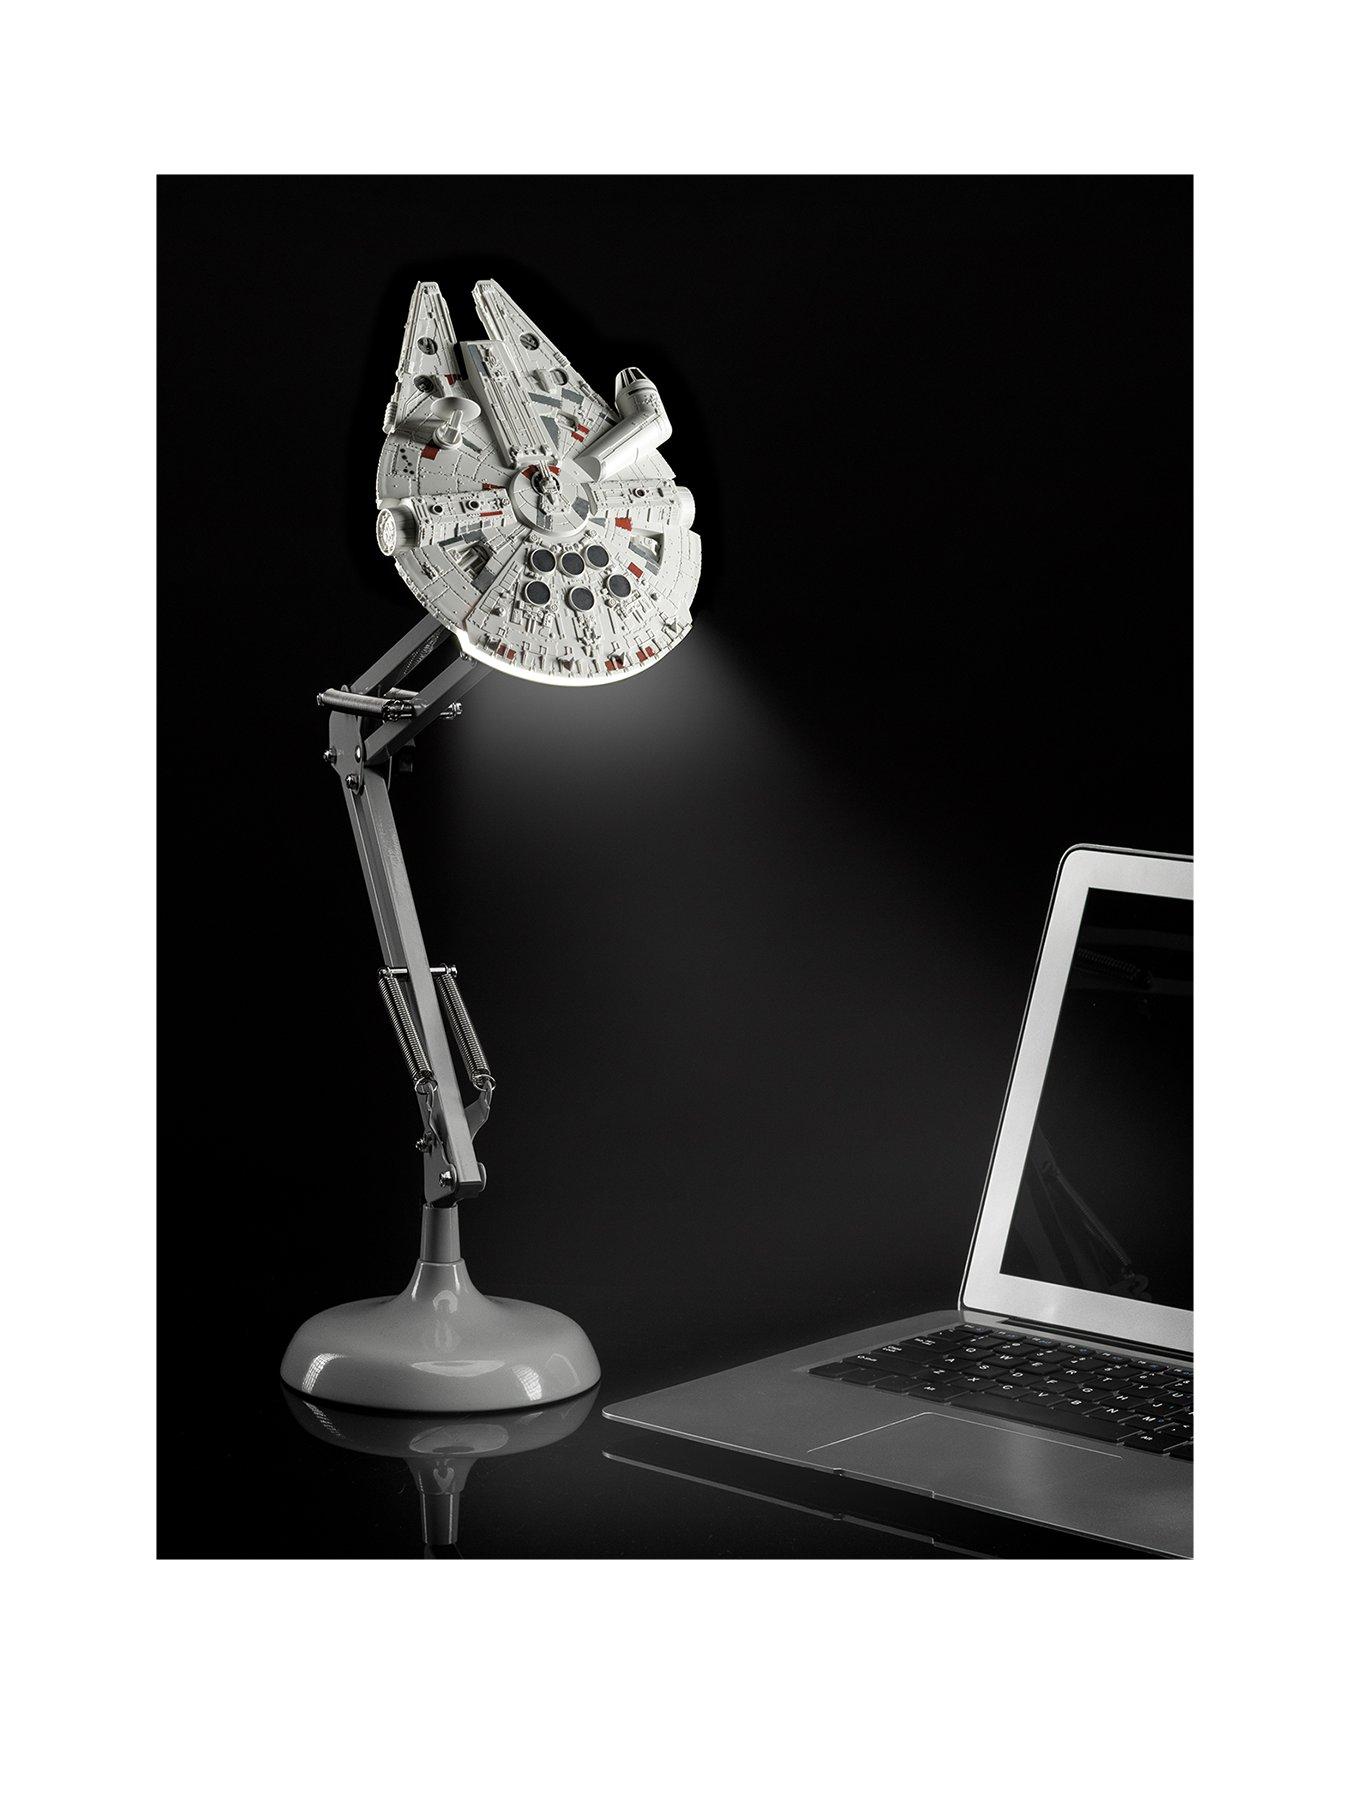 millennium falcon posable desk lamp